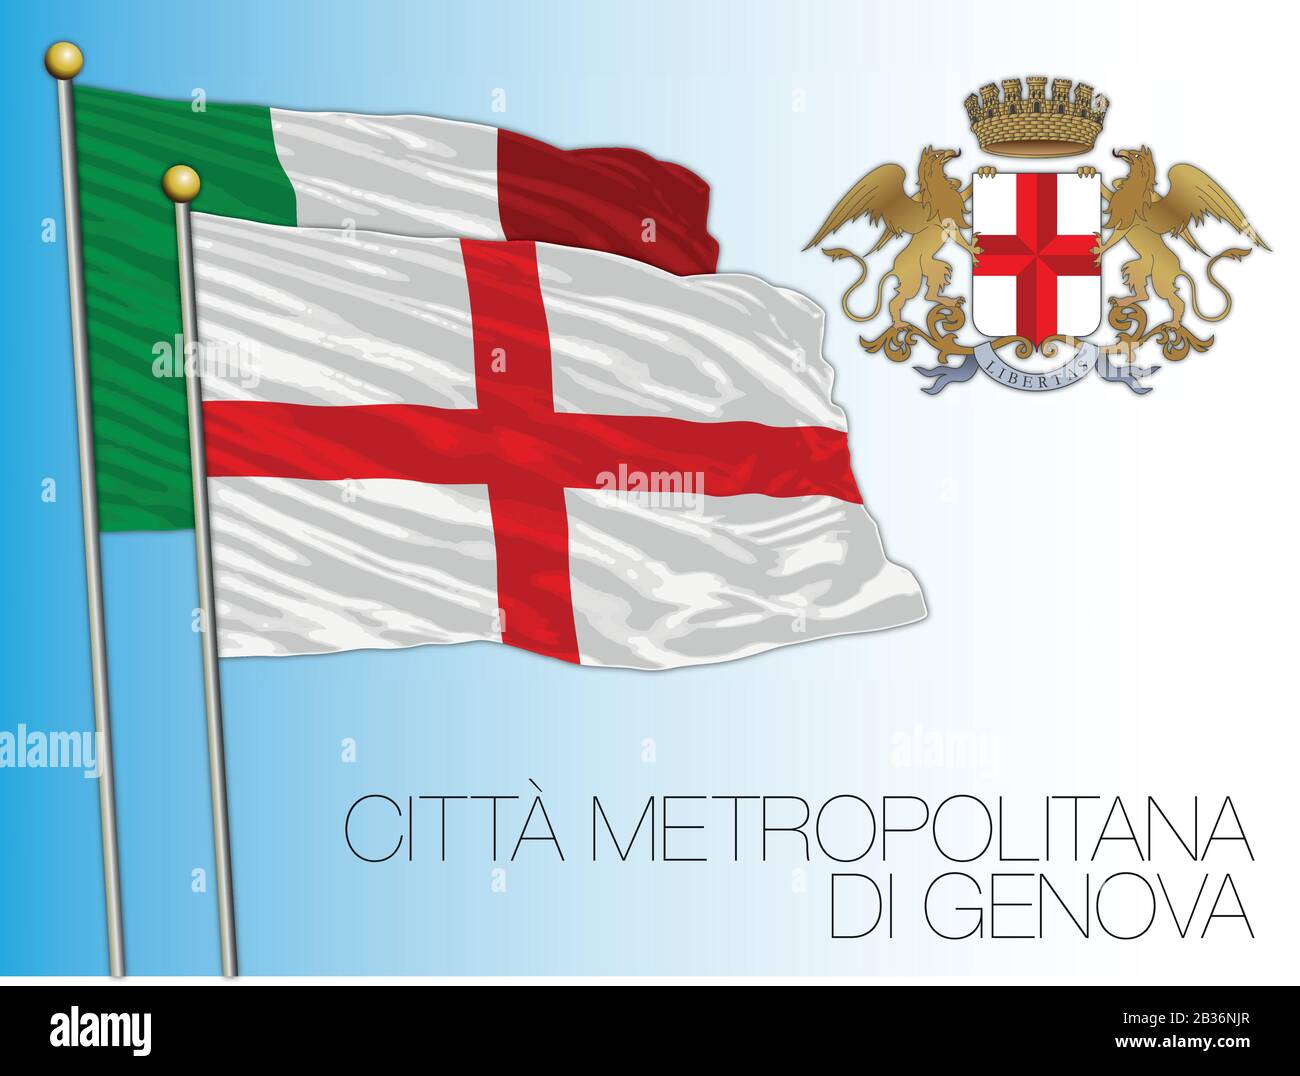 Italy Genoa City 5'x3' Flag 